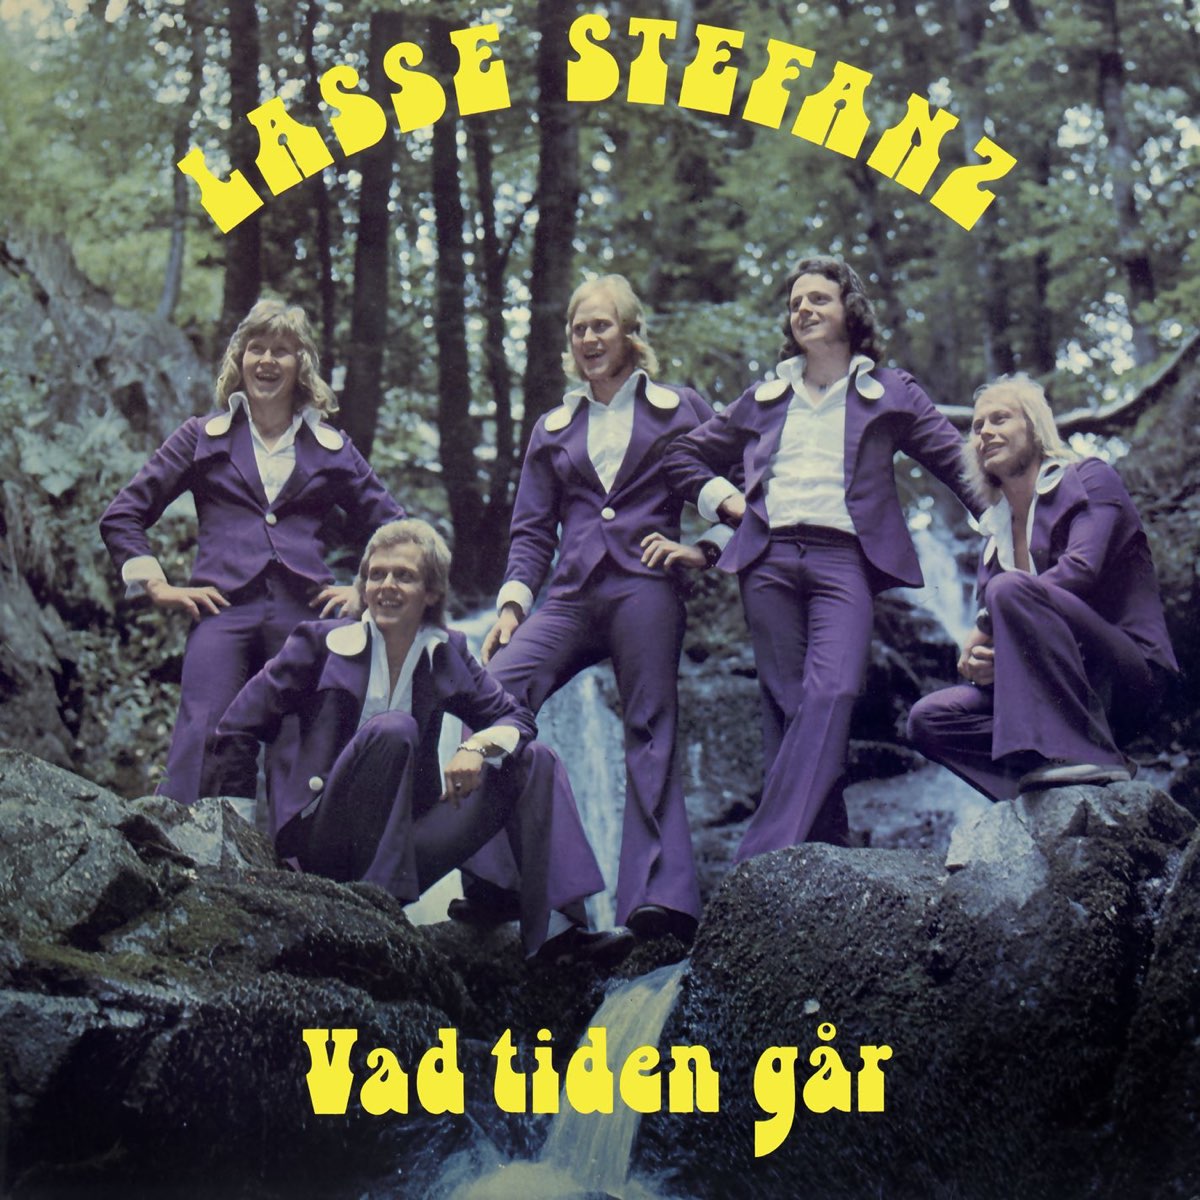 Lasse Stefanz – Vad tiden går [LP, 1975]